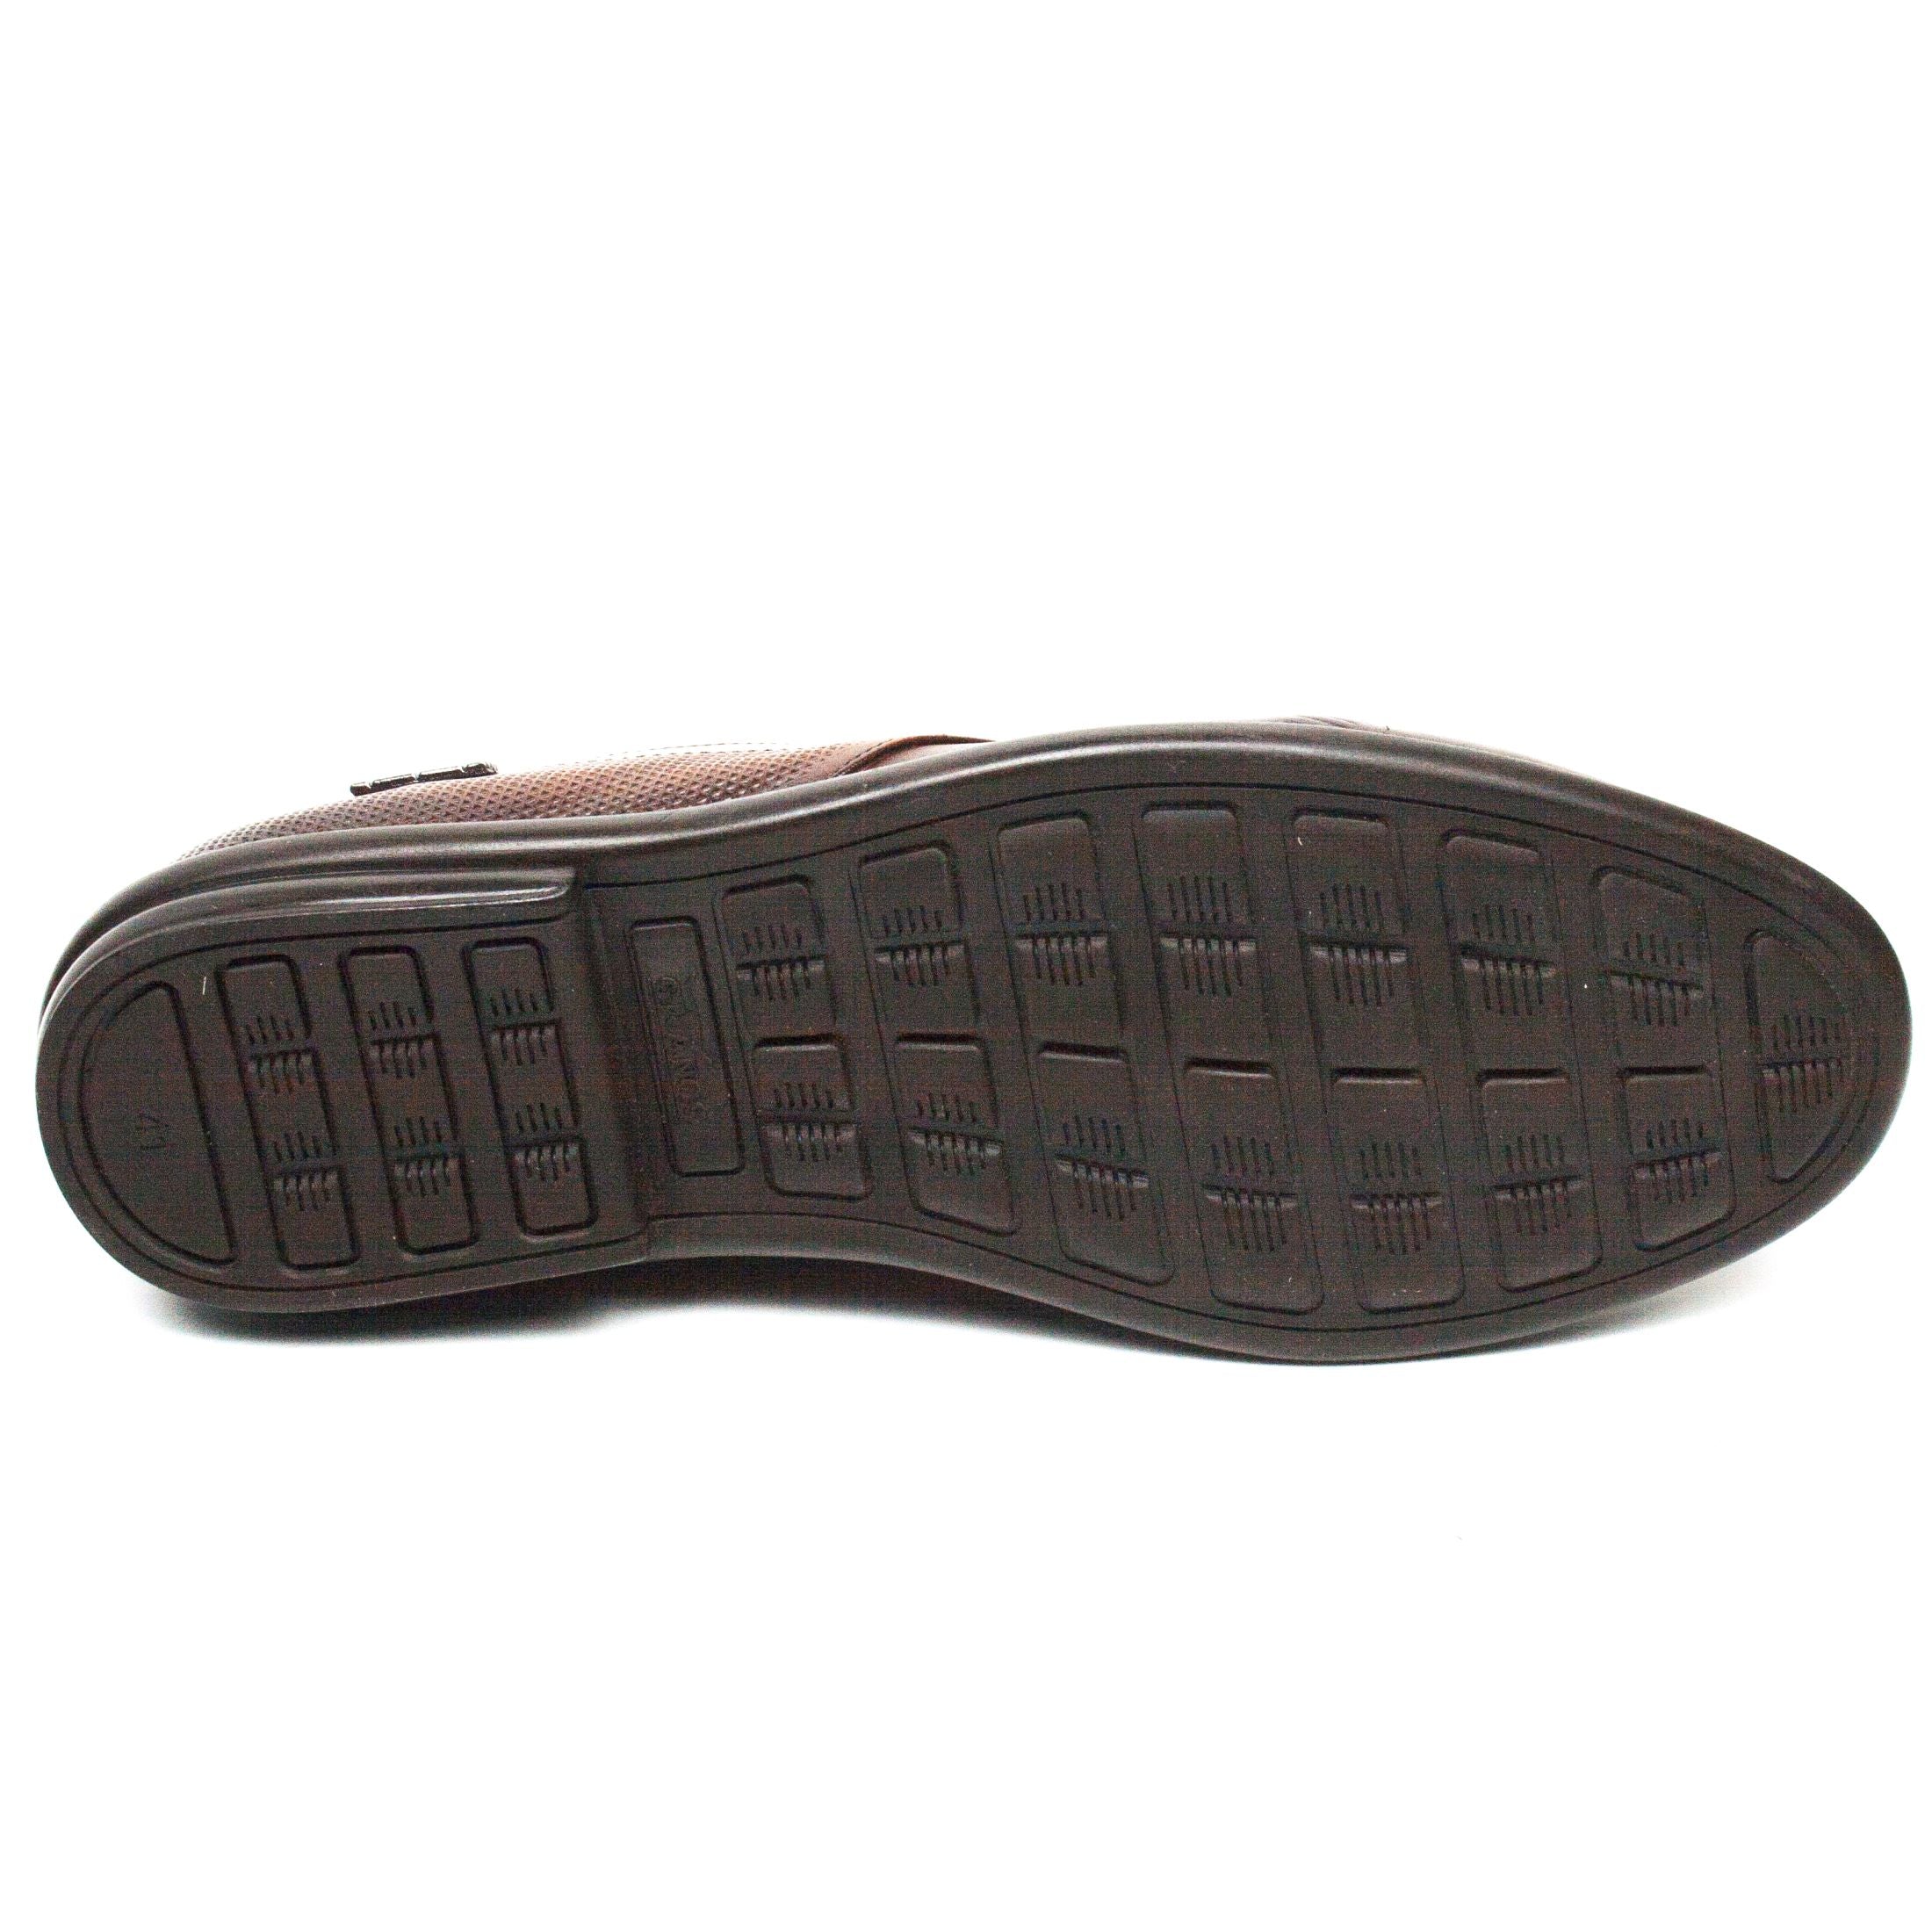 Gitanos pantofi barbati cognac IB0609-CGN